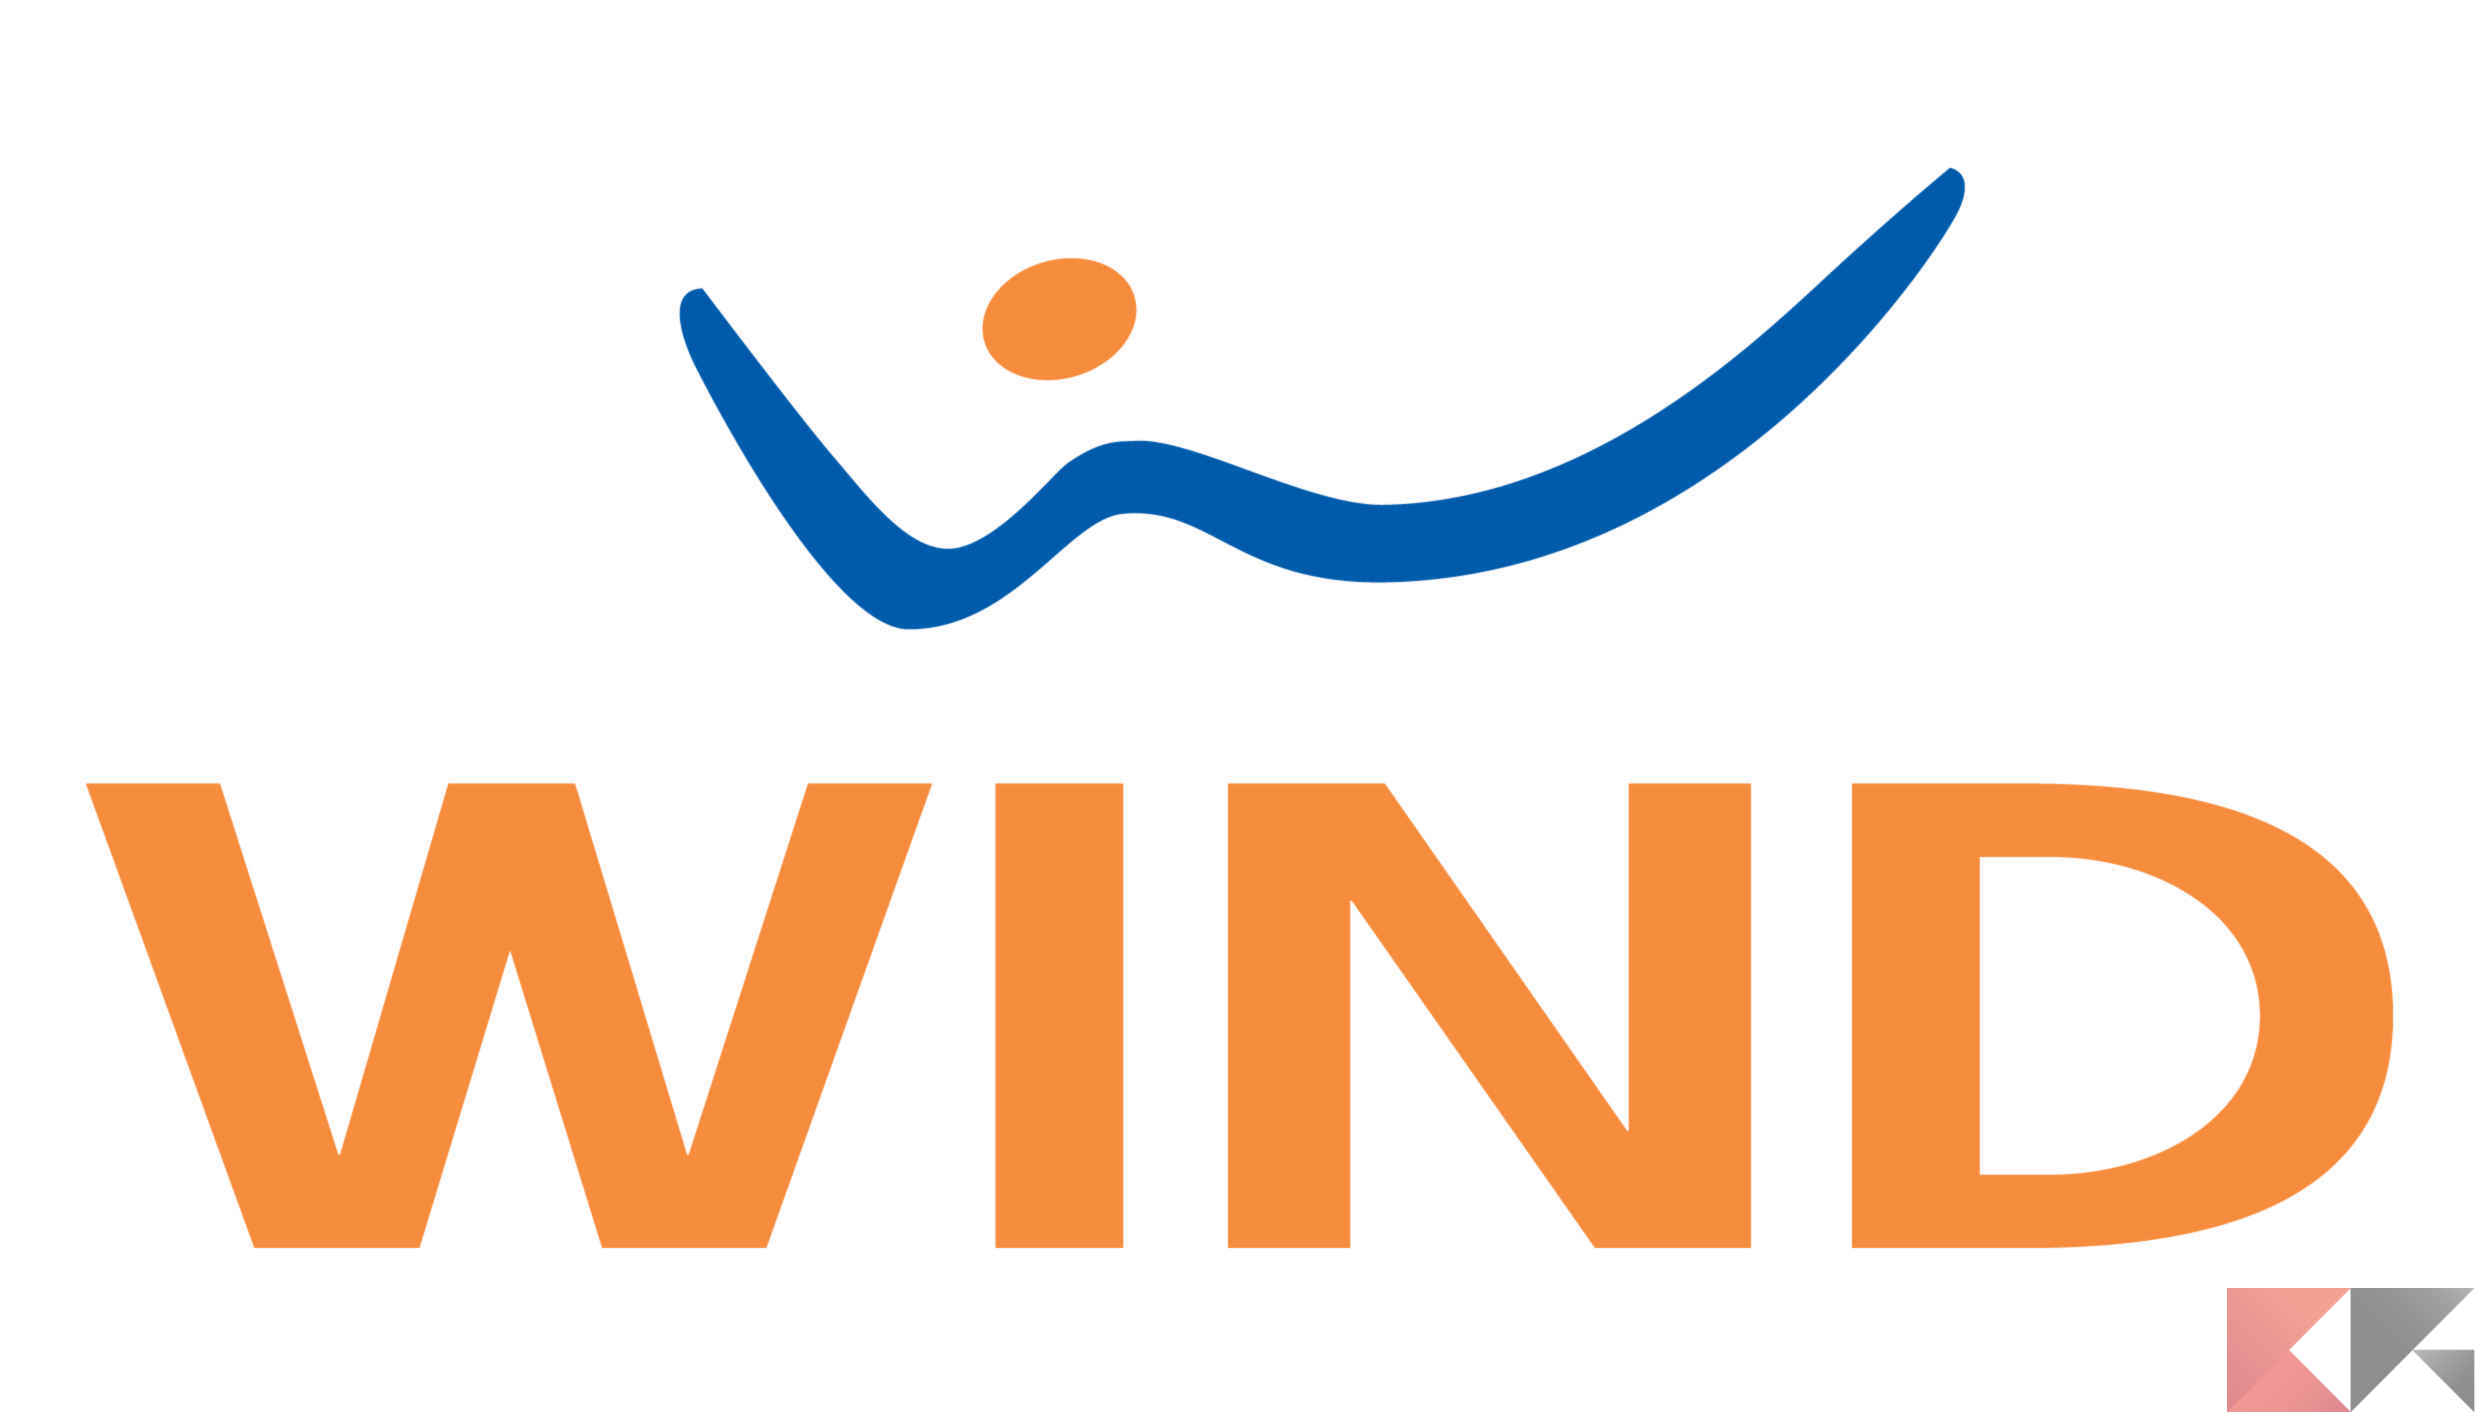 Wind logo final